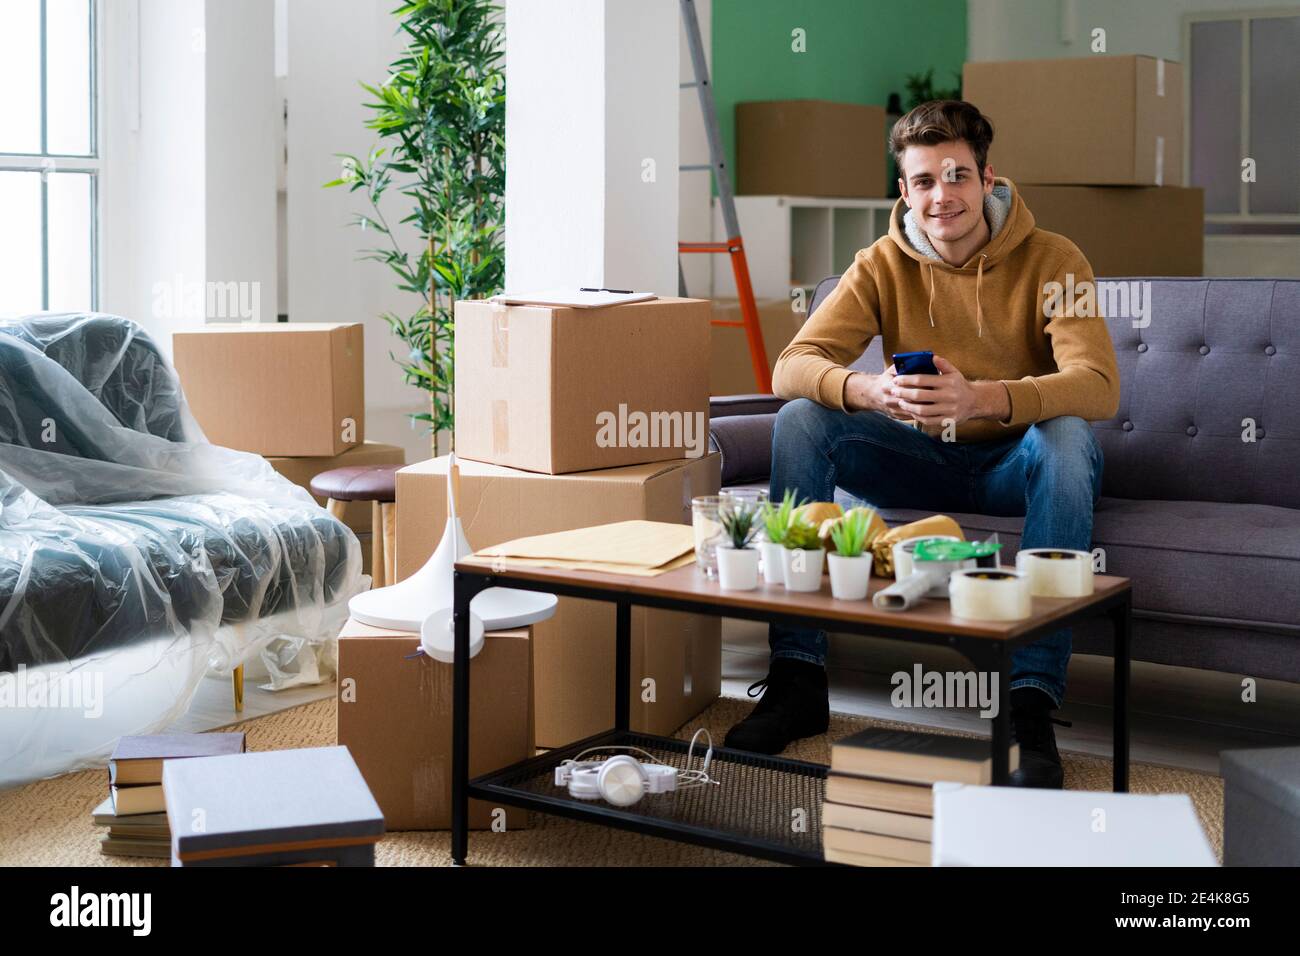 Lächelnder junger Mann mit Smartphone, der voll im Zimmer sitzt Der Kisten während des Umzugs Stockfoto